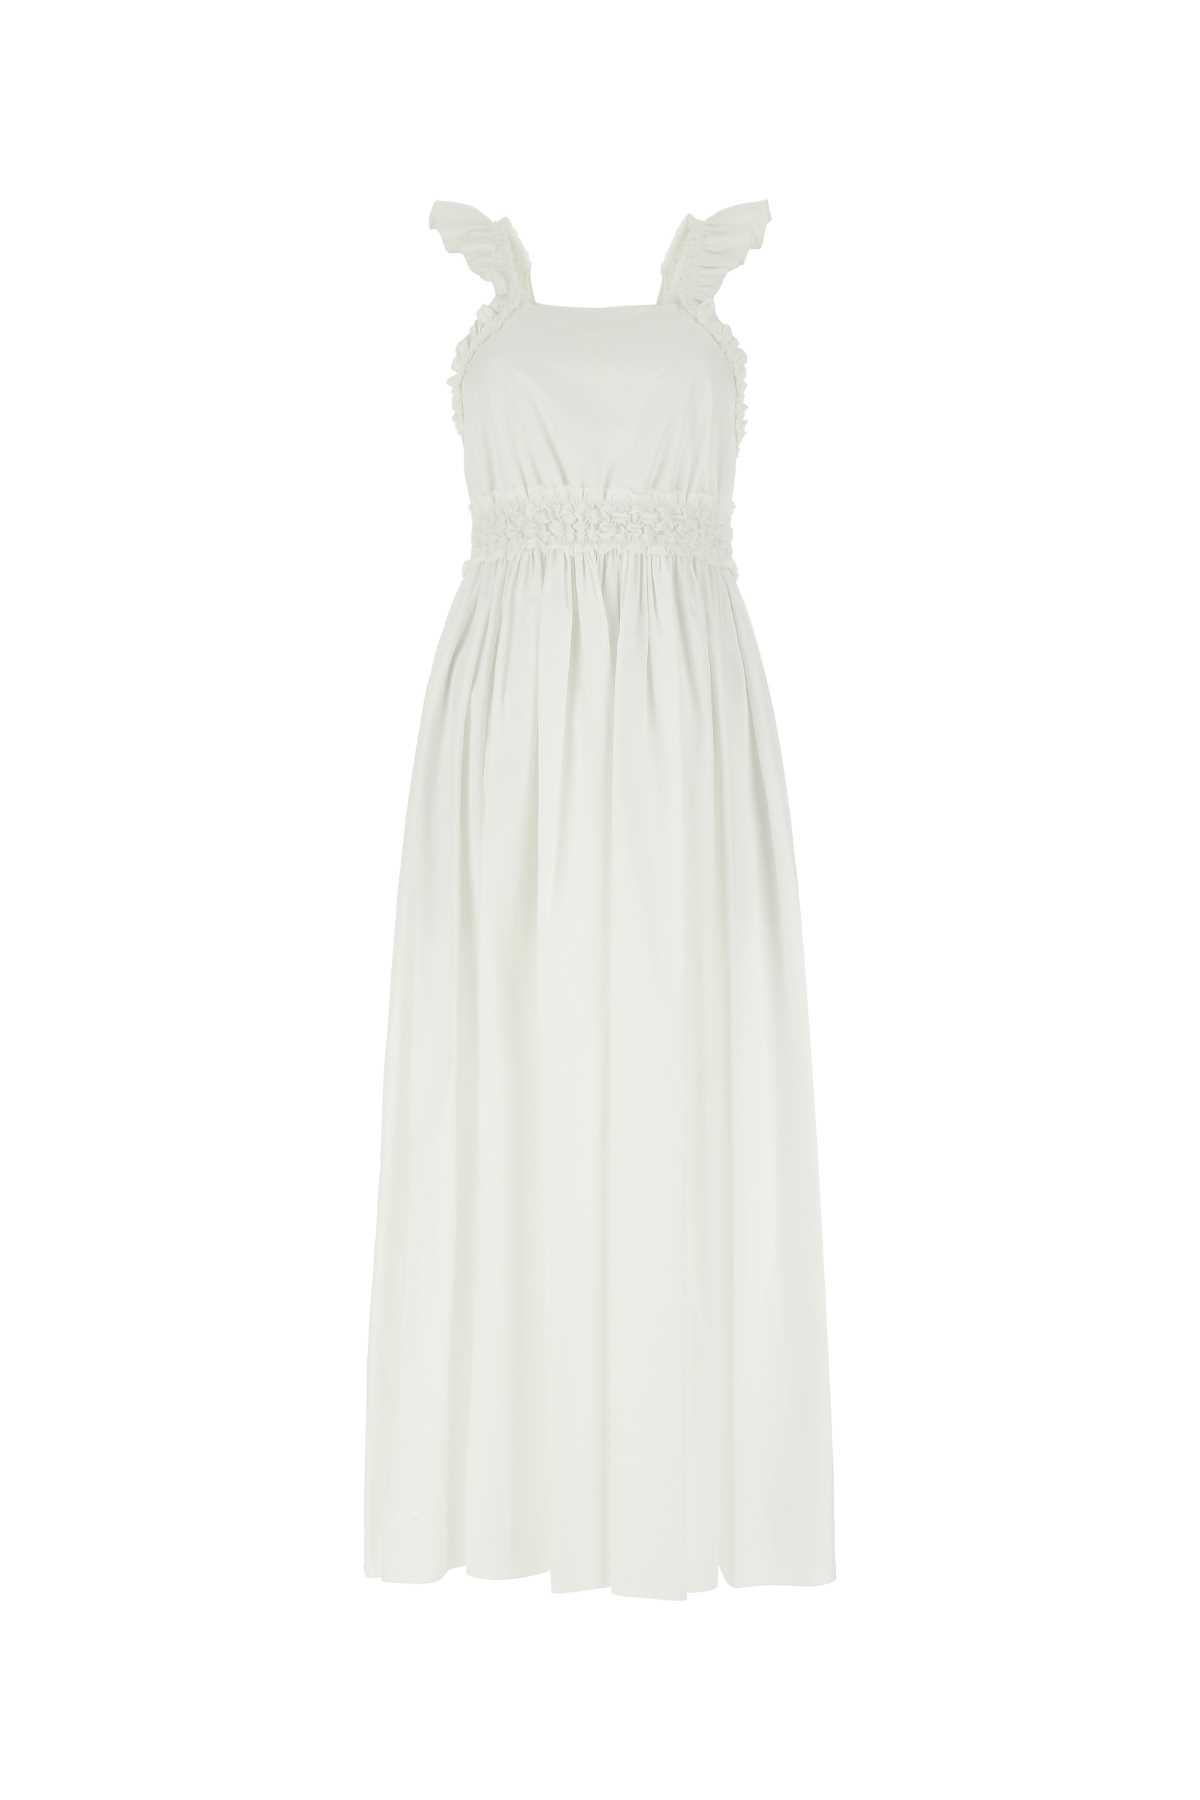 Chloé White Cotton Dress